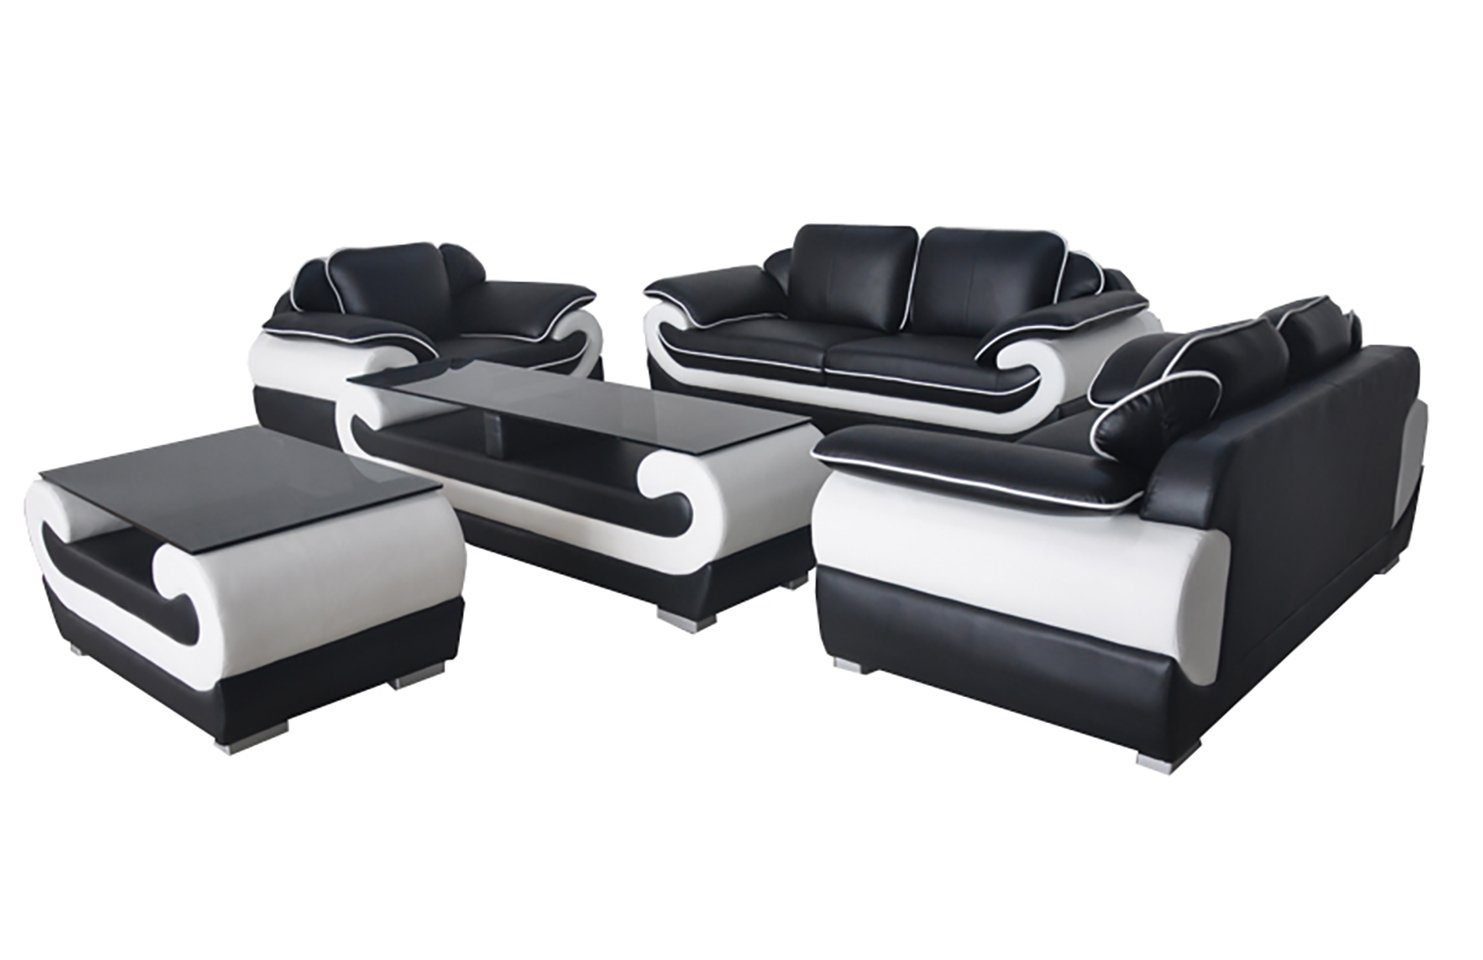 JVmoebel Sofa Sofa Couch Garnitur Sitz Polster Komplett Set 3+2+1 Sofas Design, Made in Europe SchwarzWeiß | Alle Sofas